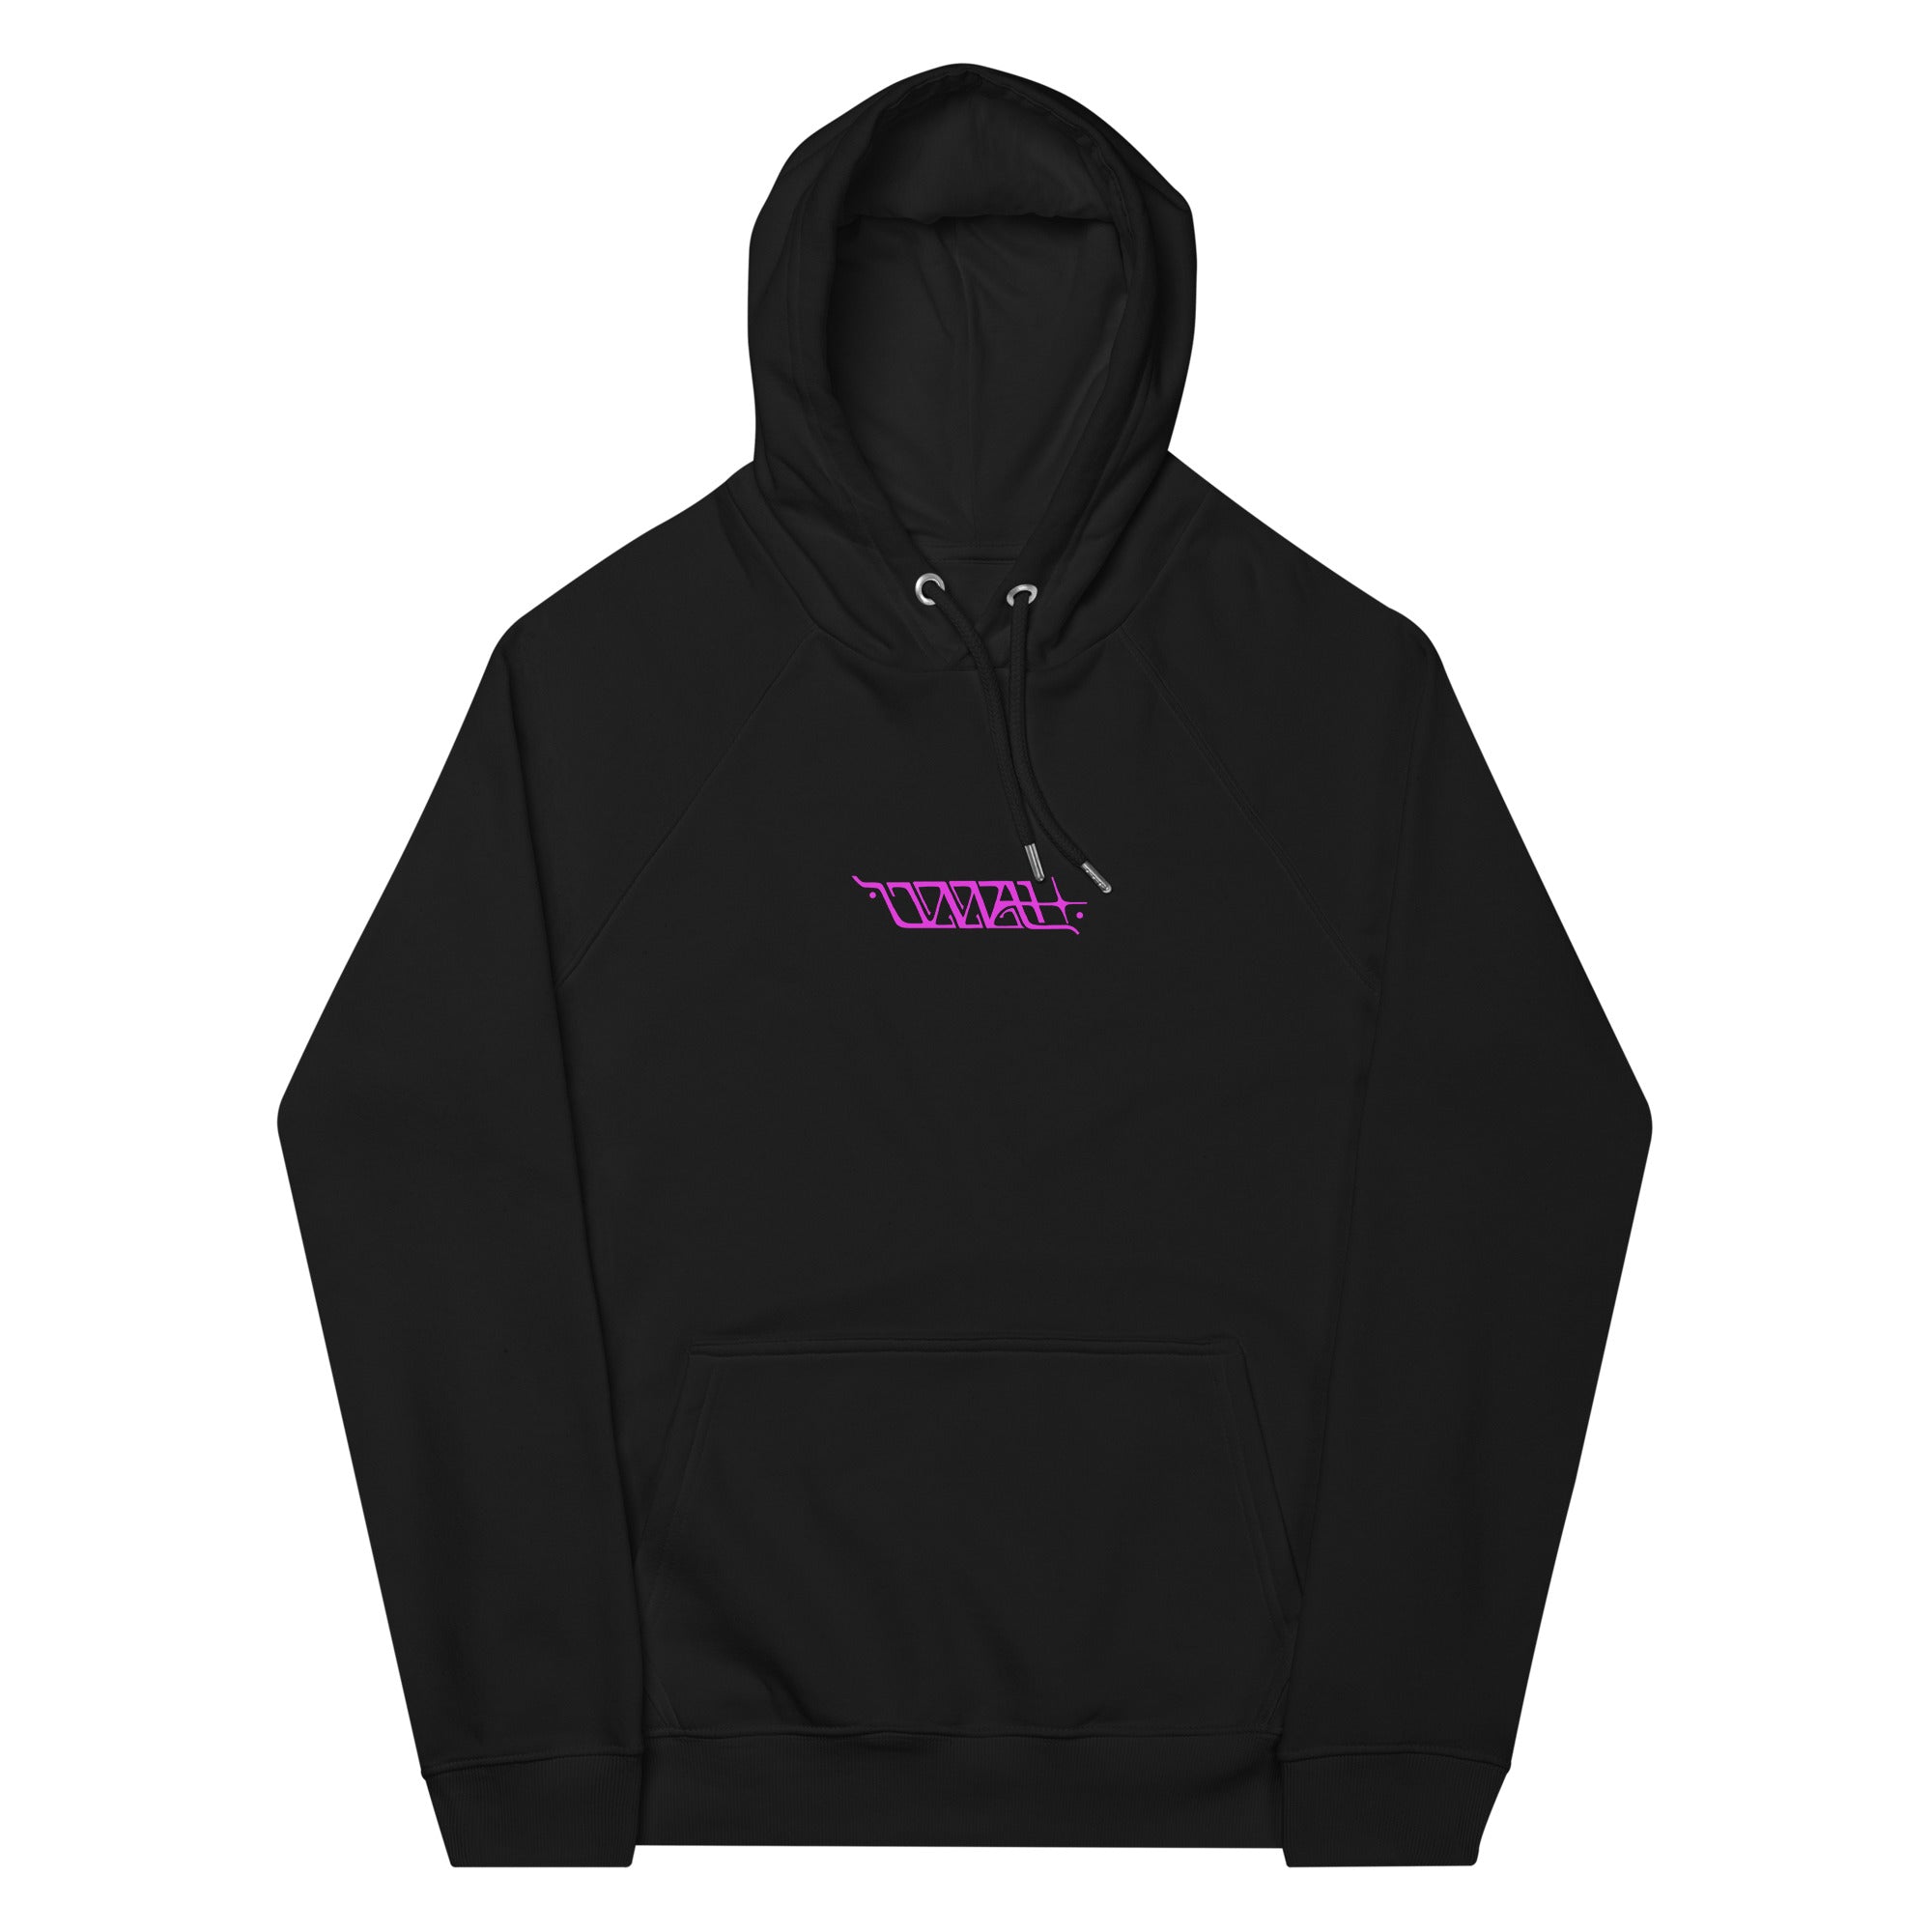 unisex-eco-raglan-hoodie-black-front-663feb56d1476.jpg